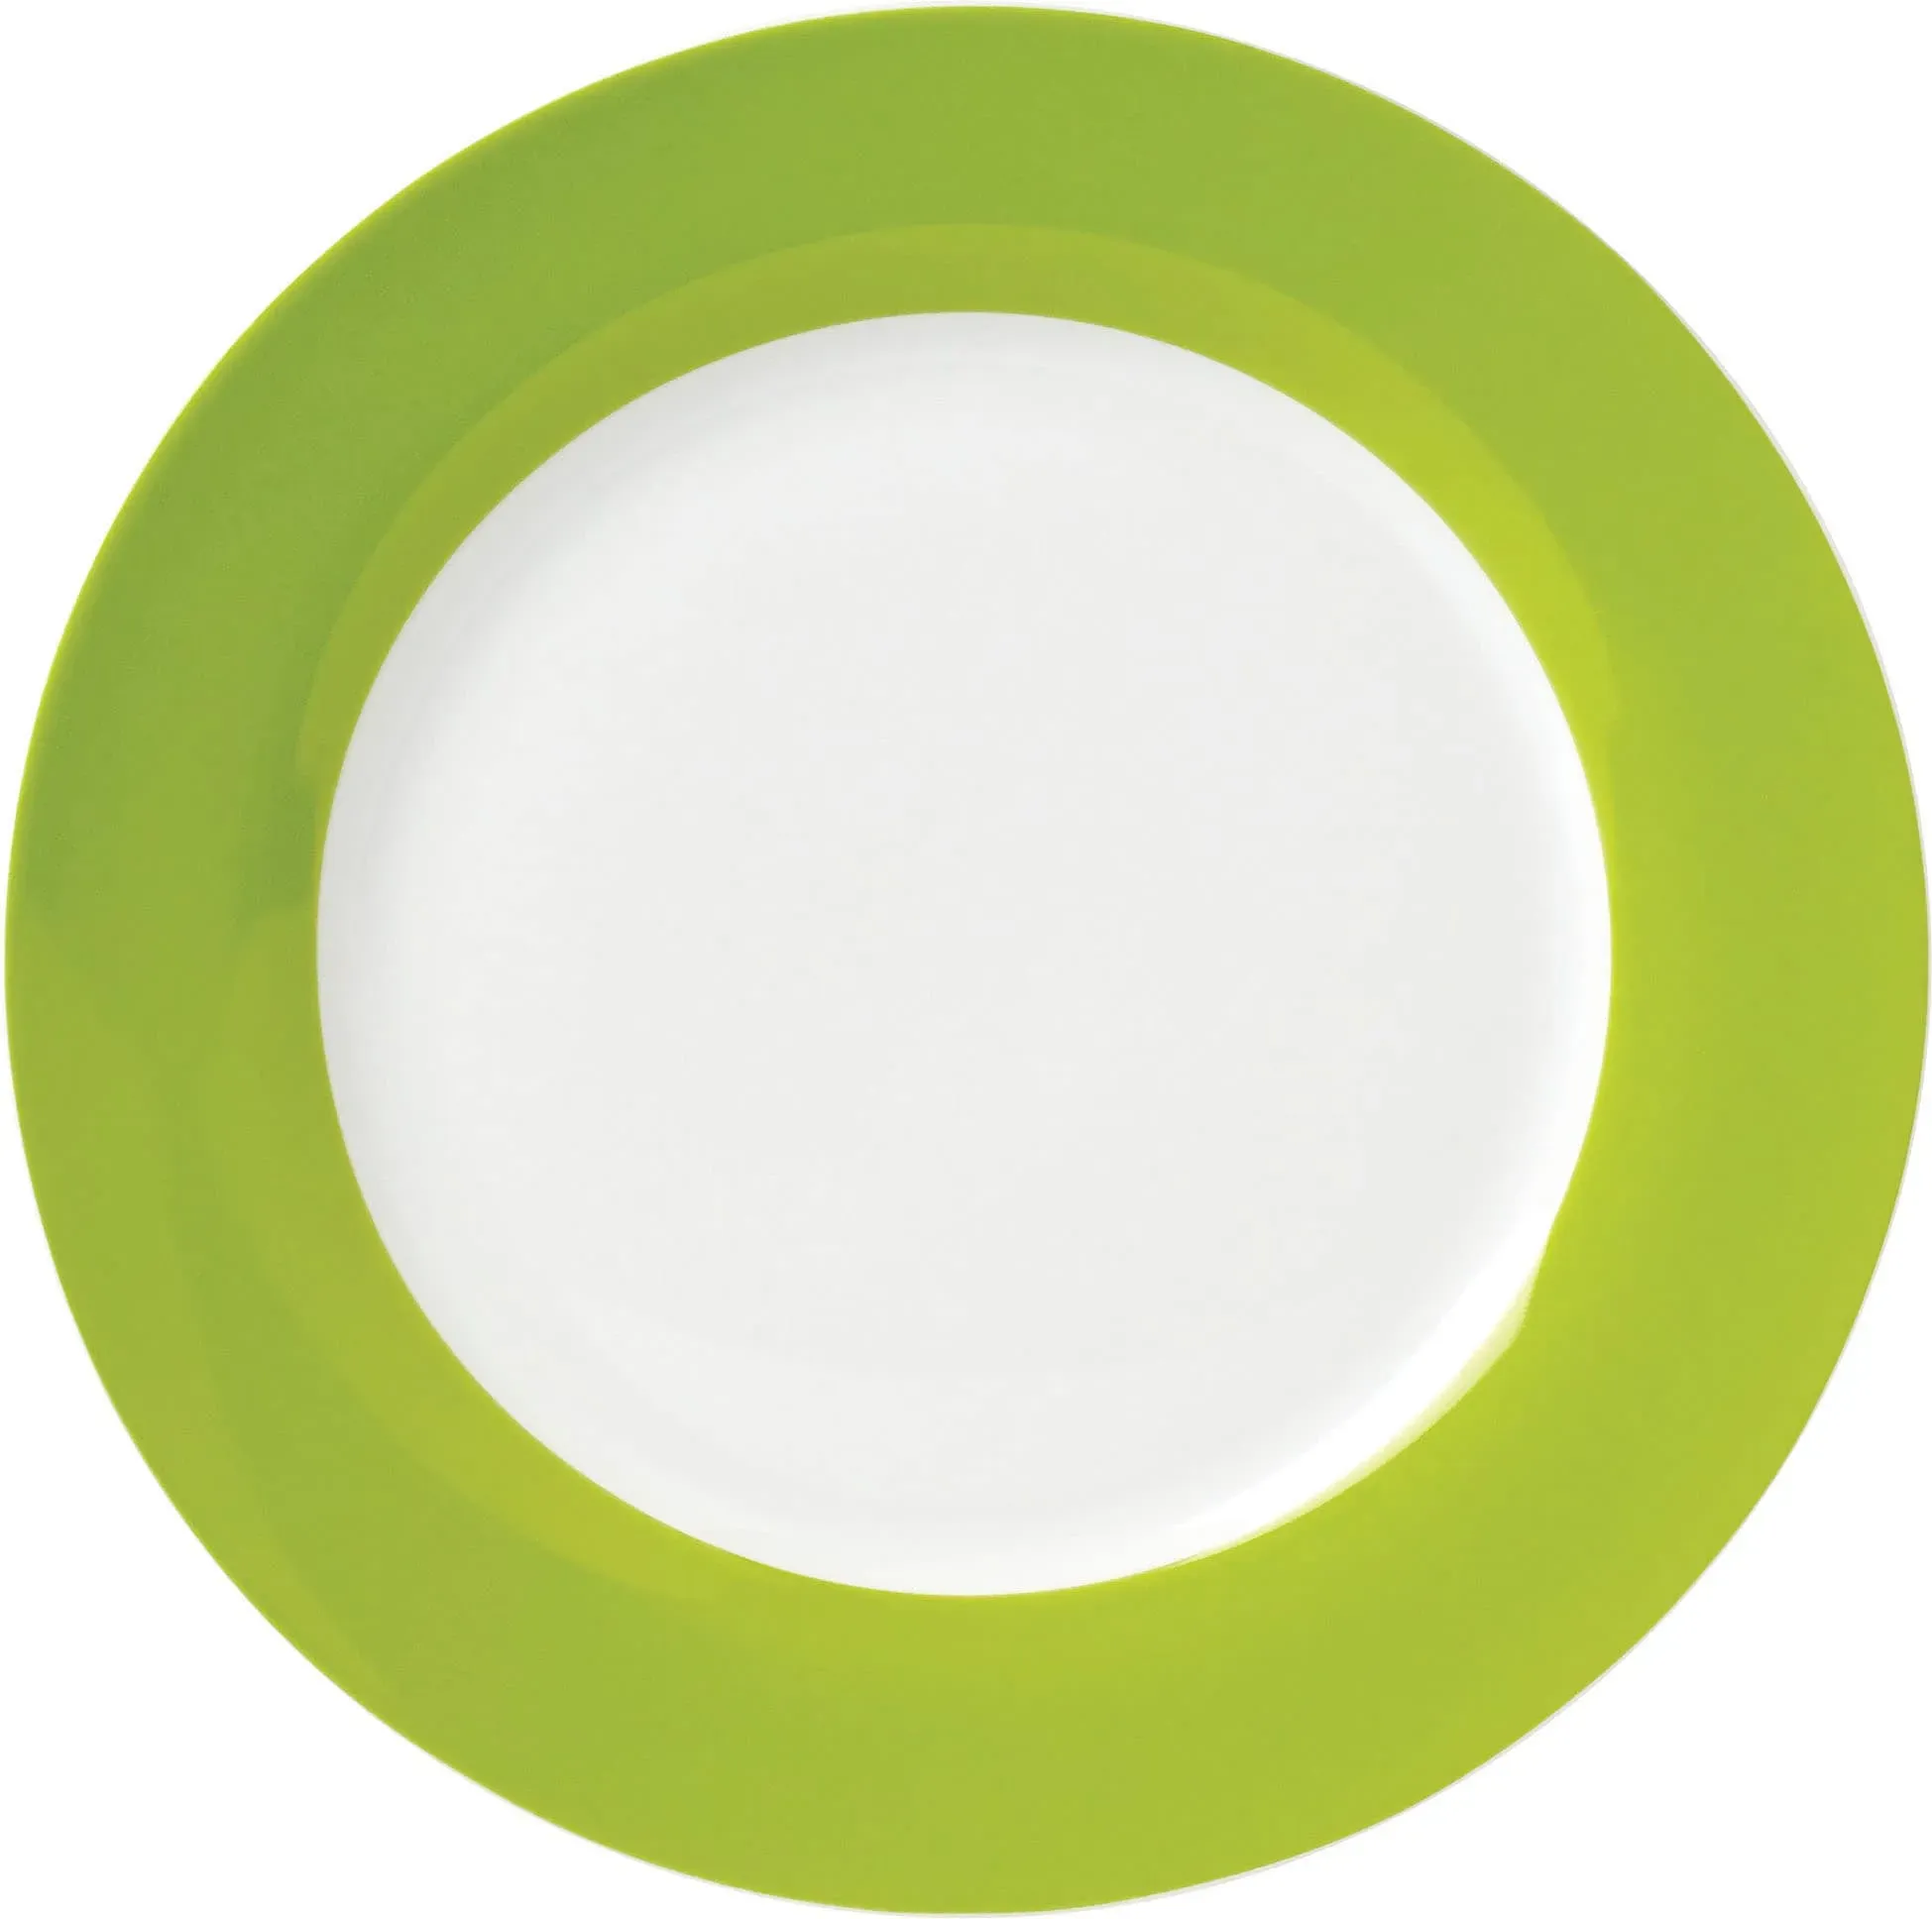 Speiseteller VAN WELL "Vario" Gr. 26,5 cm, grün (grün, weiß) Speiseteller Porzellan, spülmaschinen- und mikrowellengeeignet, Ø 26,5 cm